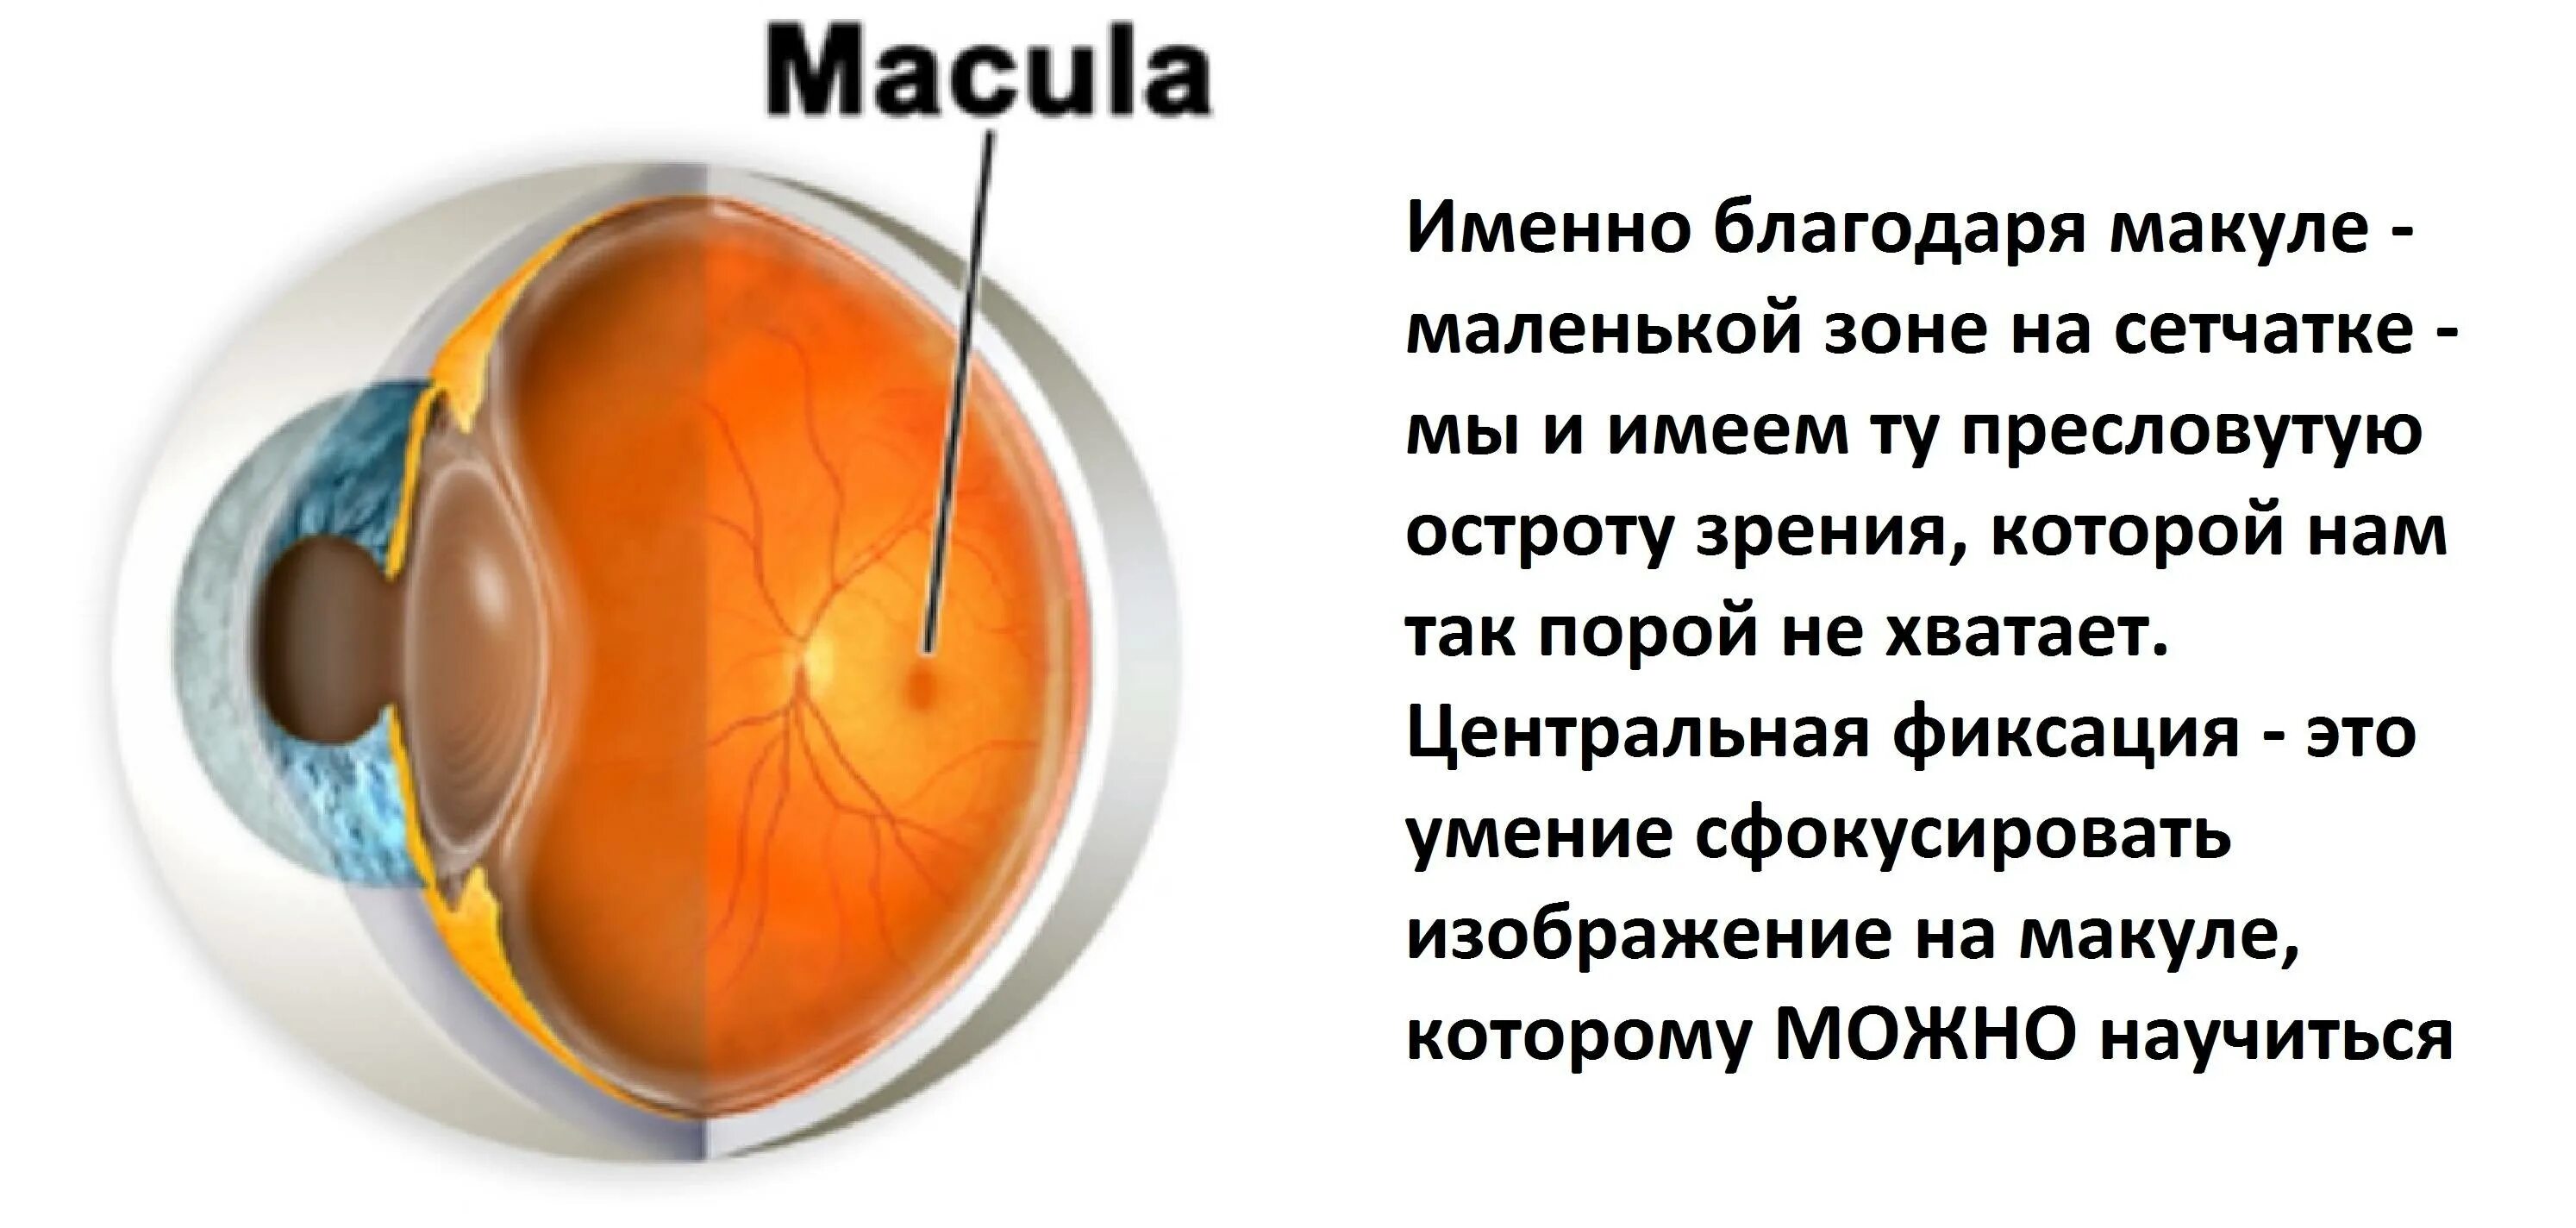 Макулярная дистрофия сетчатки. Строение глаза анатомия сетчатка желтое пятно. Строение сетчатки макула. Строение глаза макула. Жидкость в сетчатке